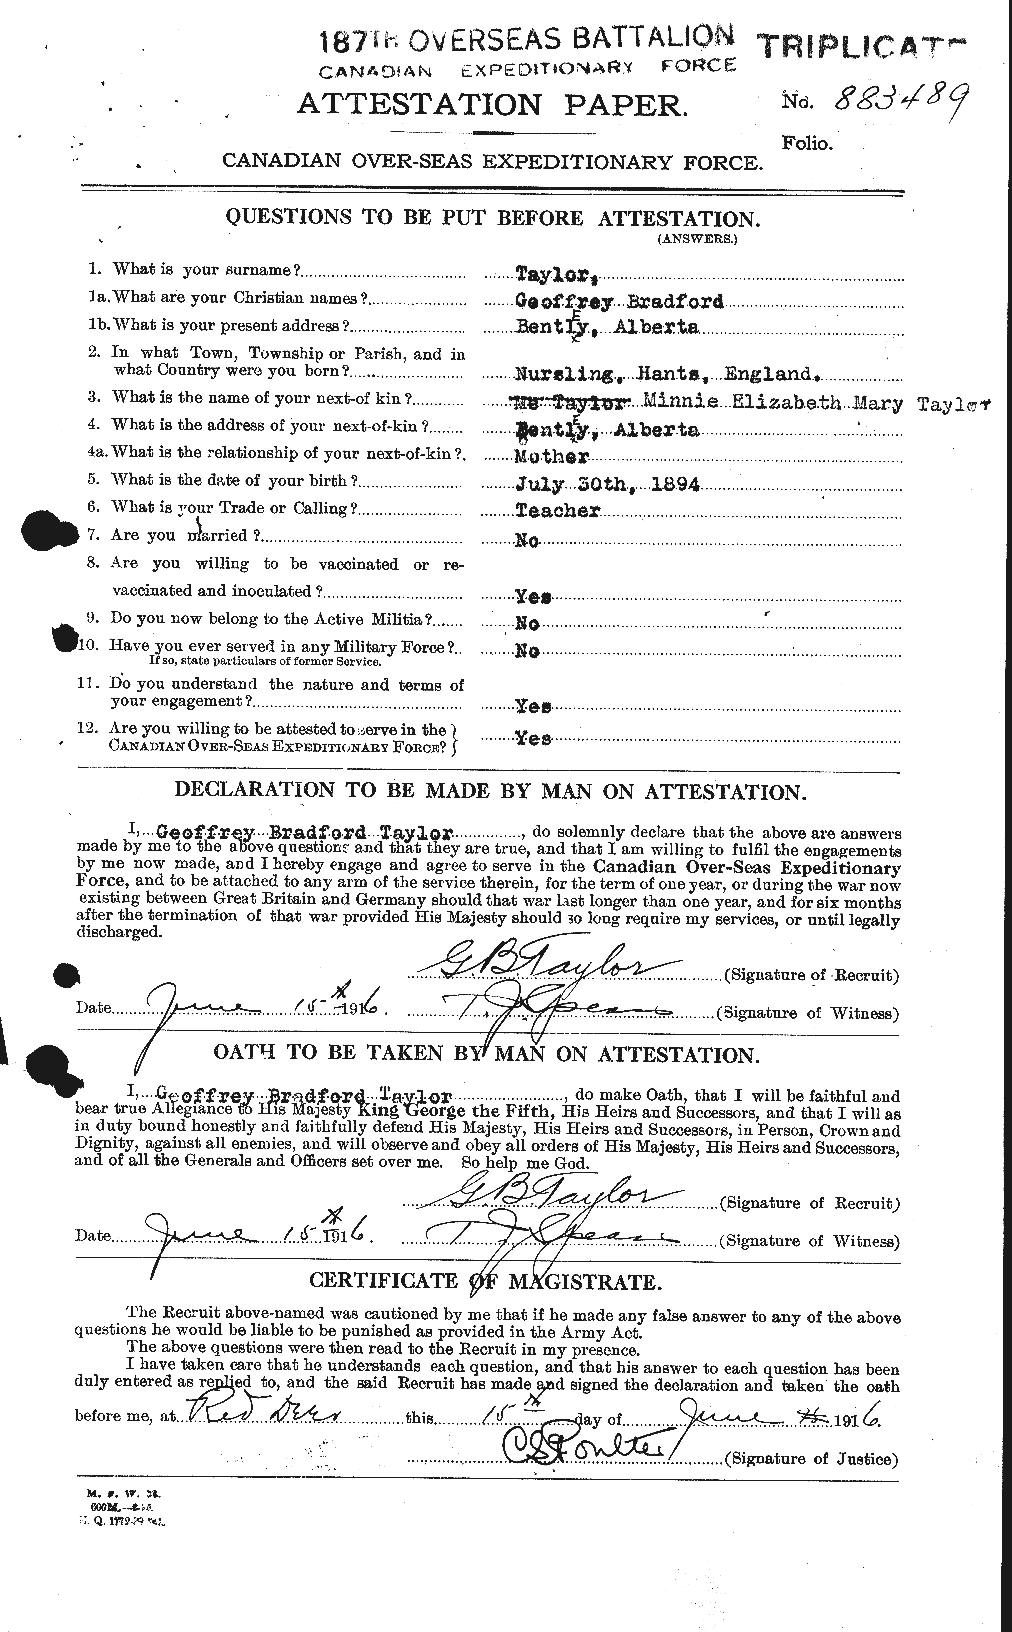 Dossiers du Personnel de la Première Guerre mondiale - CEC 625835a